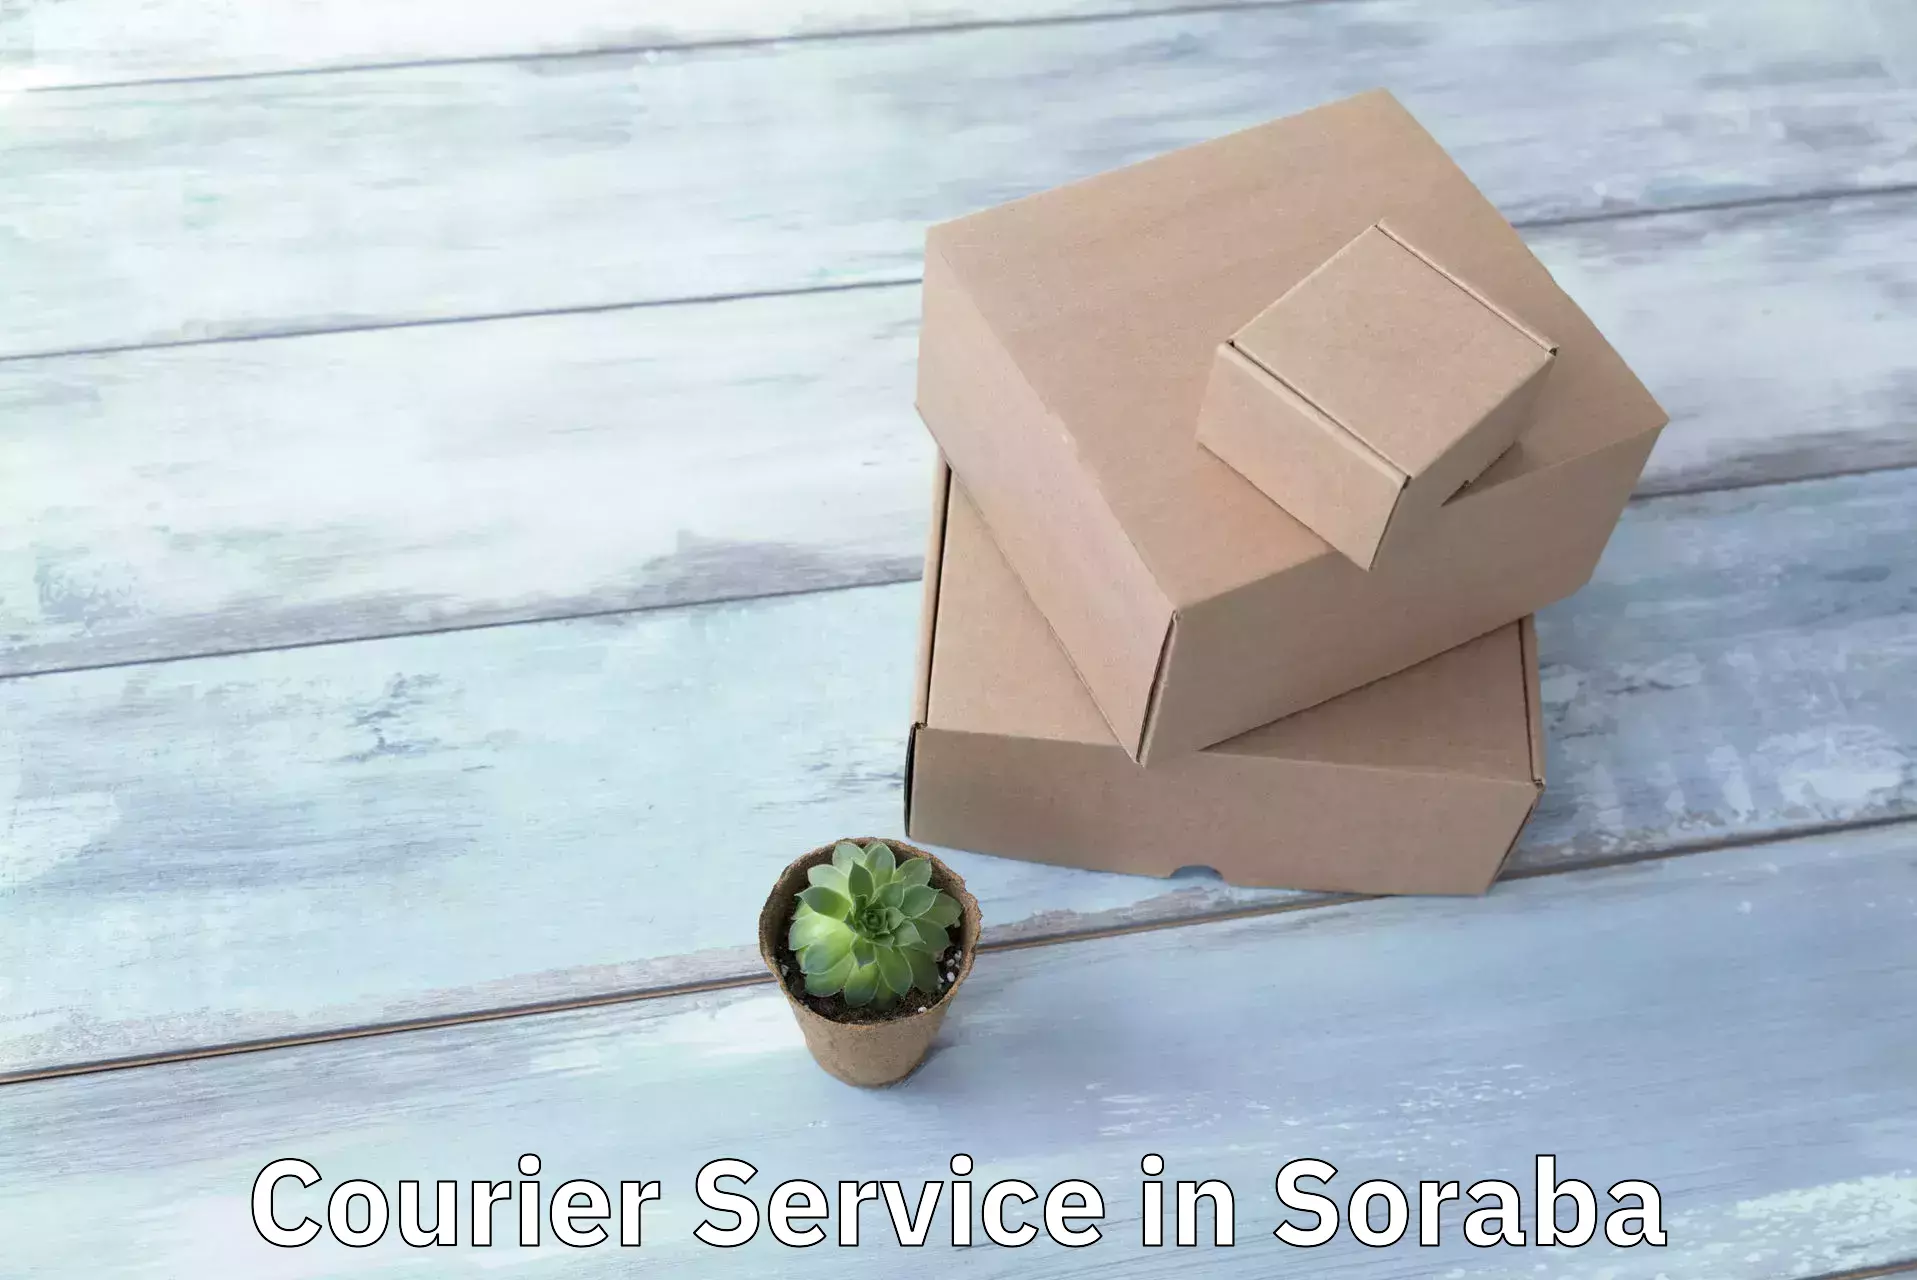 Courier service efficiency in Soraba